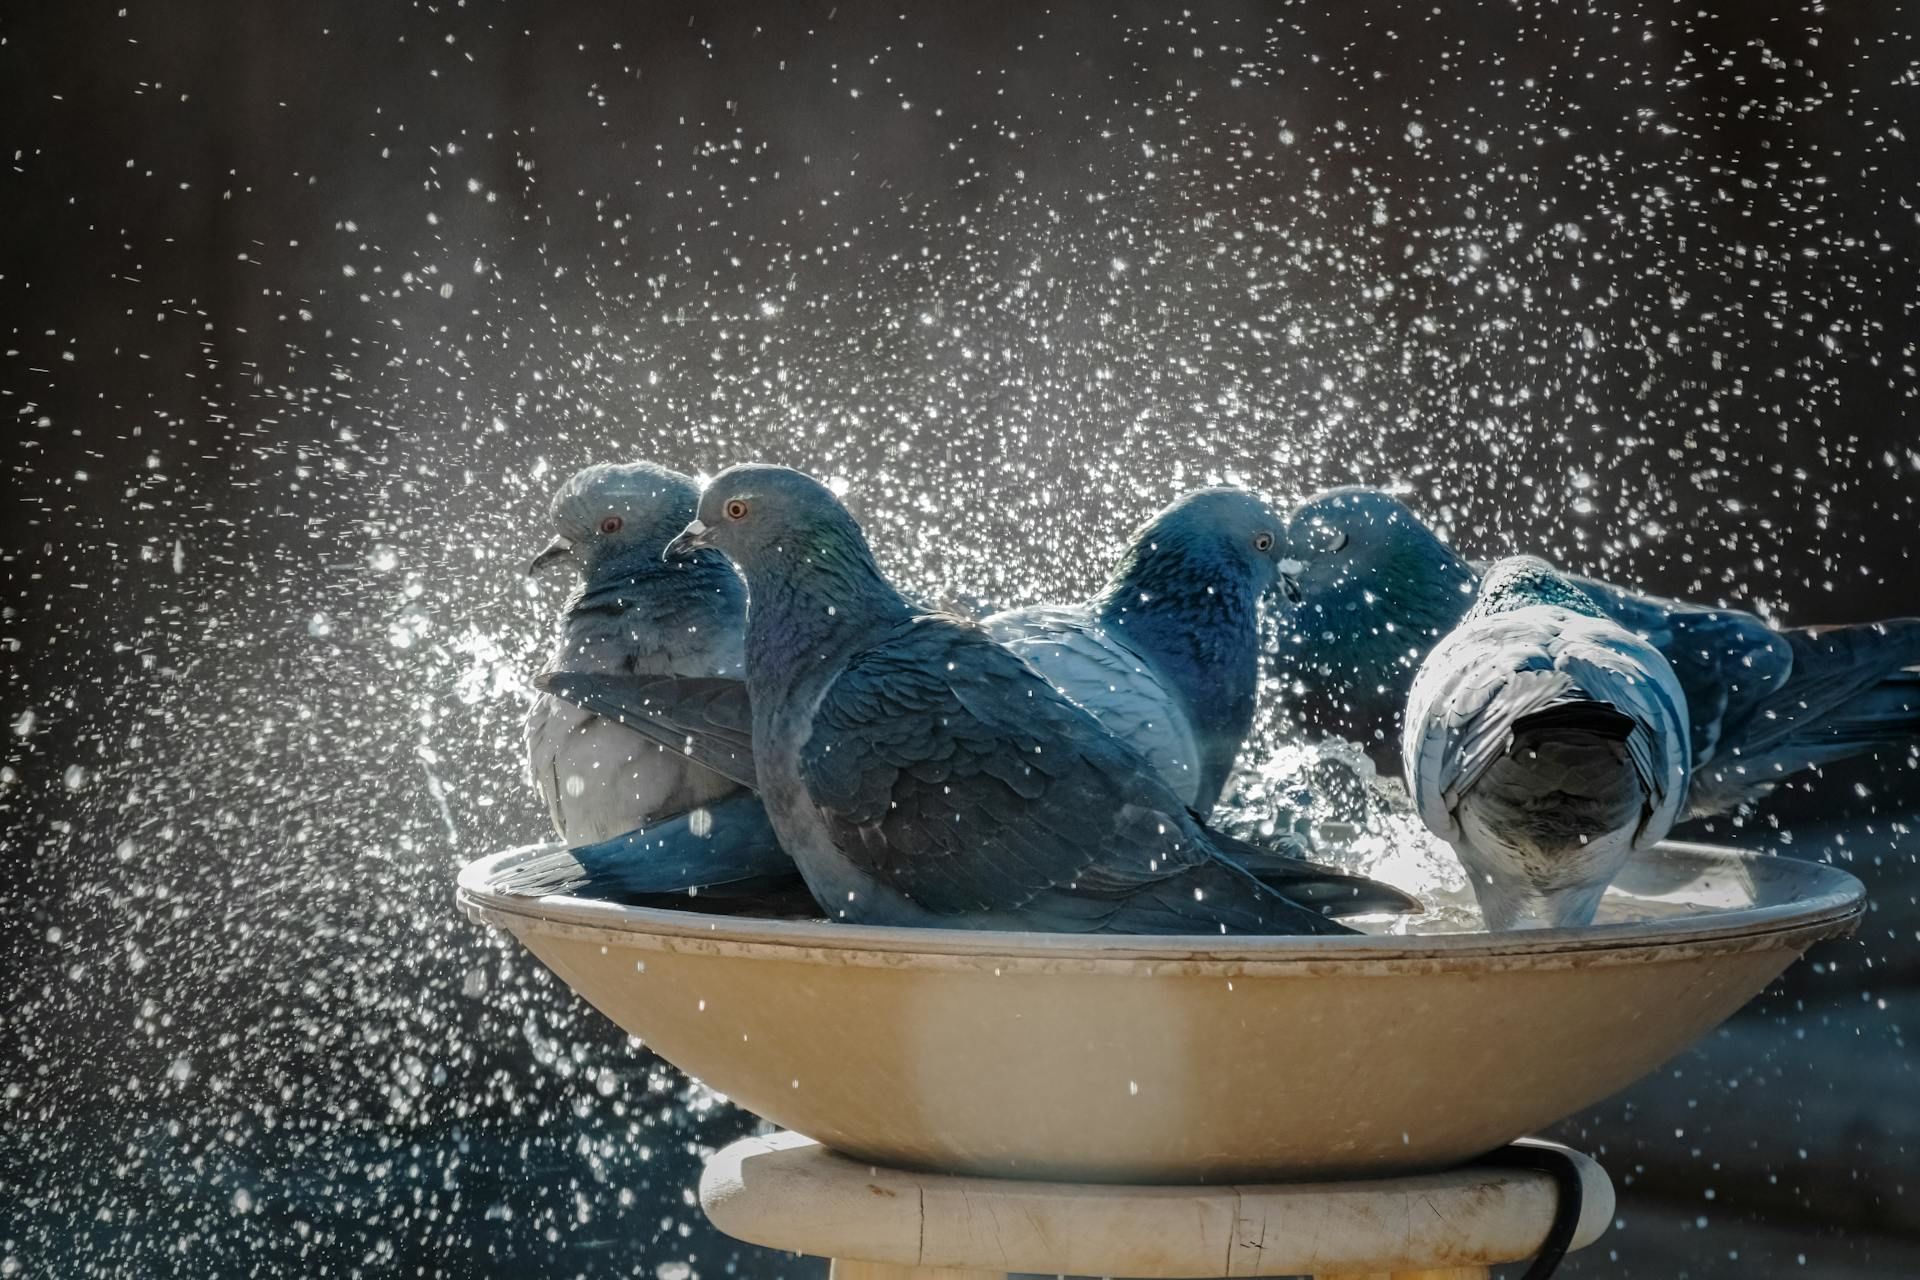 16 березня птахи купаються в калюжах до потепління / © Pexels